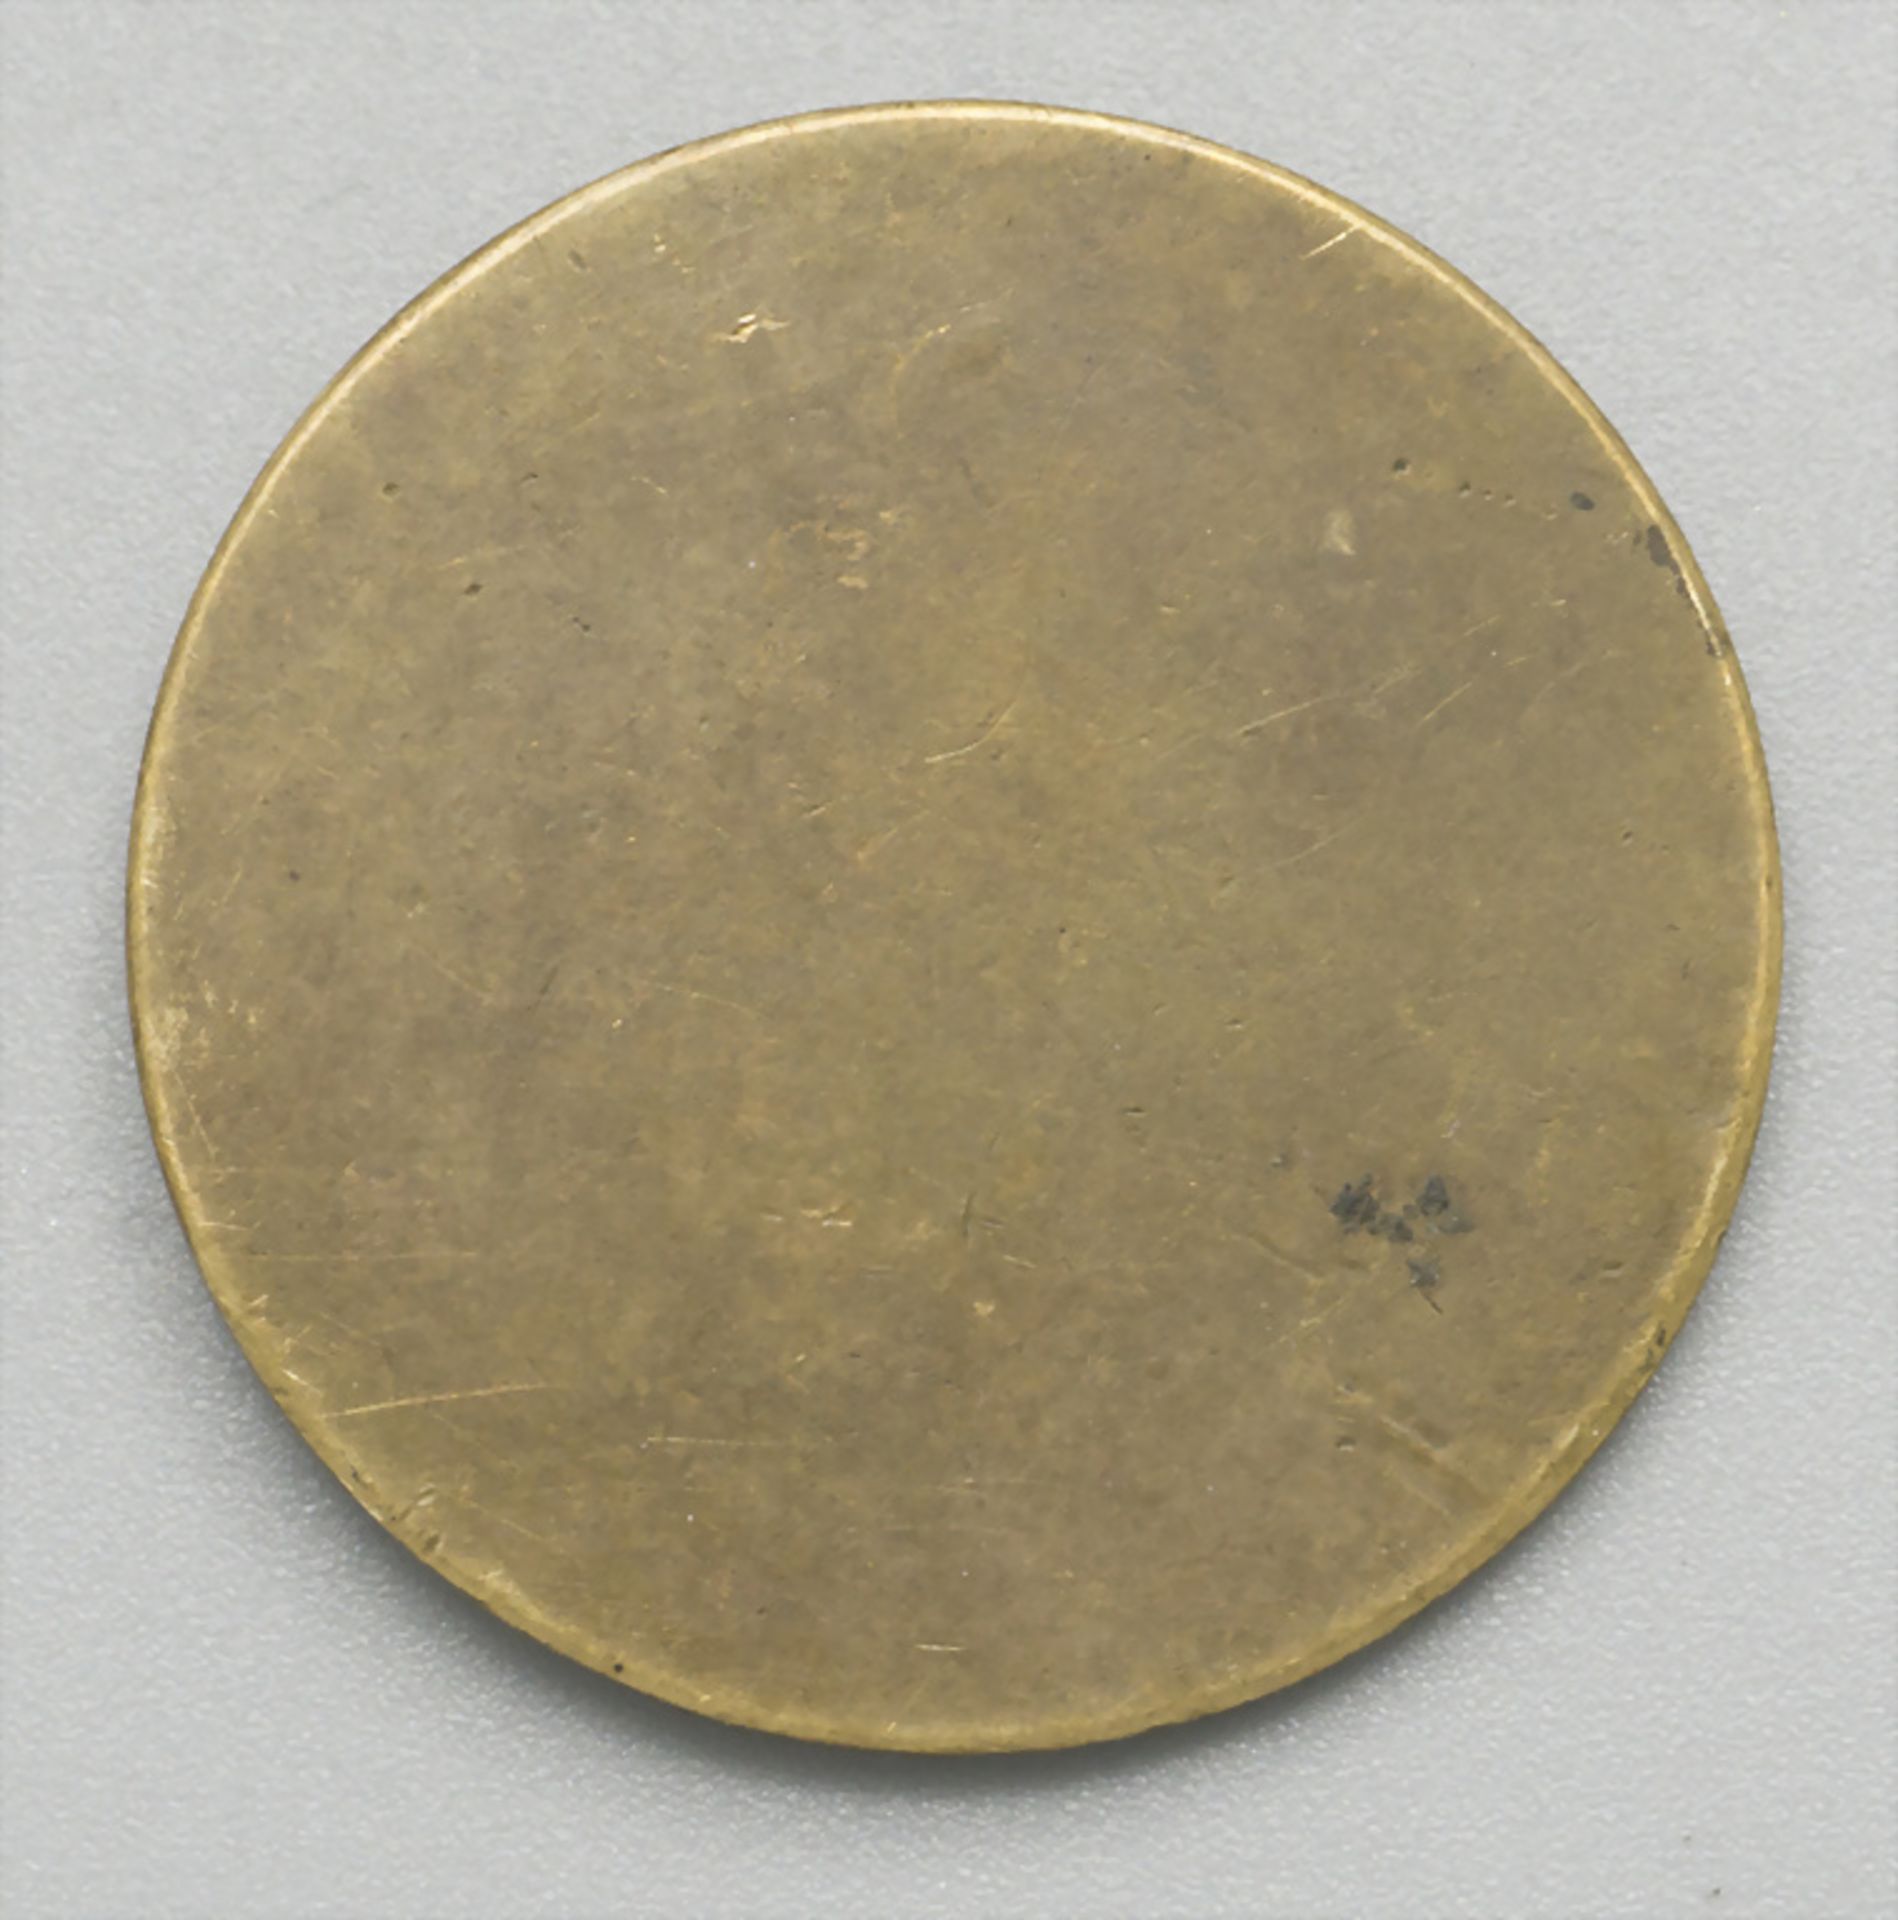 Medaille 'Friedrich Schiller', 1905 - Image 2 of 2